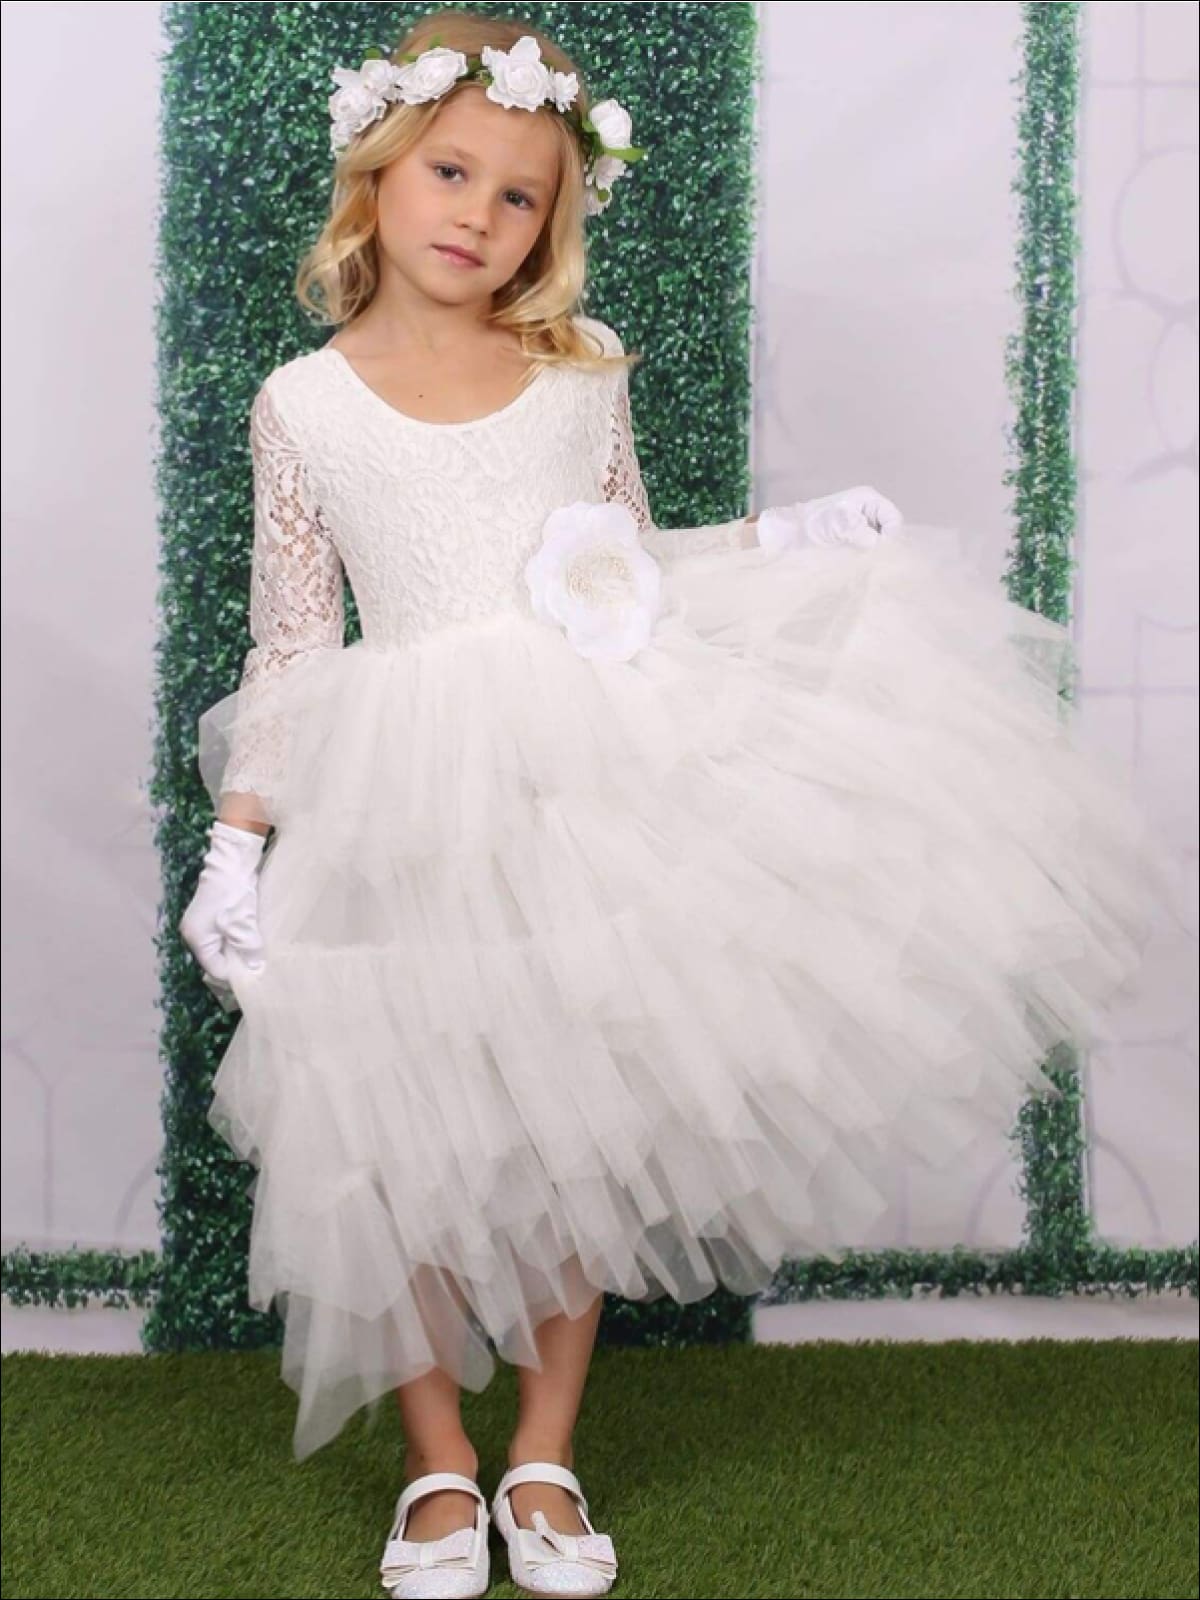 Toddler Girls Summer Dresses  White Ruffled Dress - Mia Belle Girls